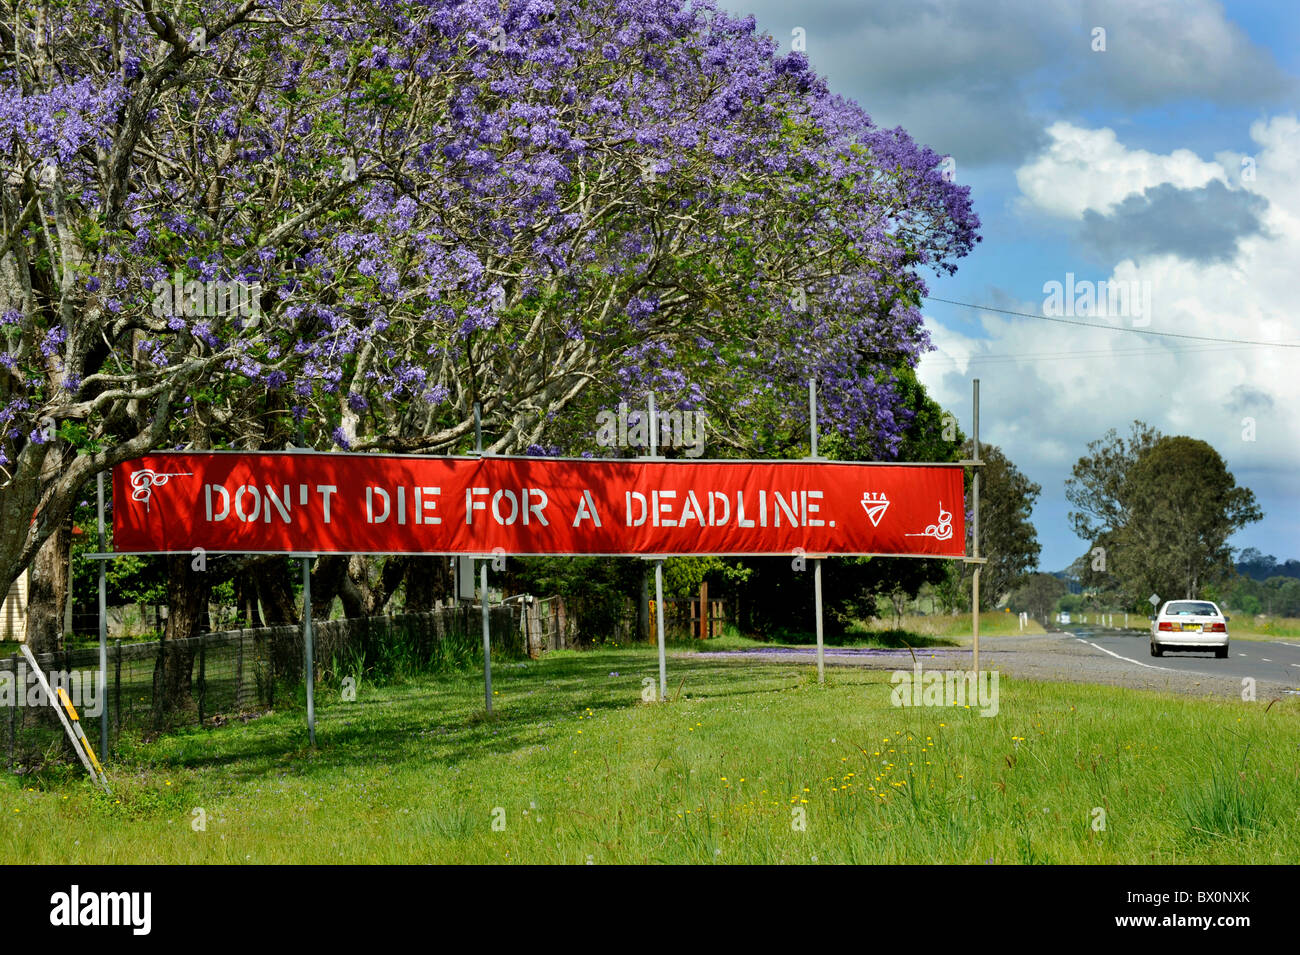 Un signe de sécurité routière dans l'Australie exhorte les conducteurs à ralentir sur les routes. Banque D'Images